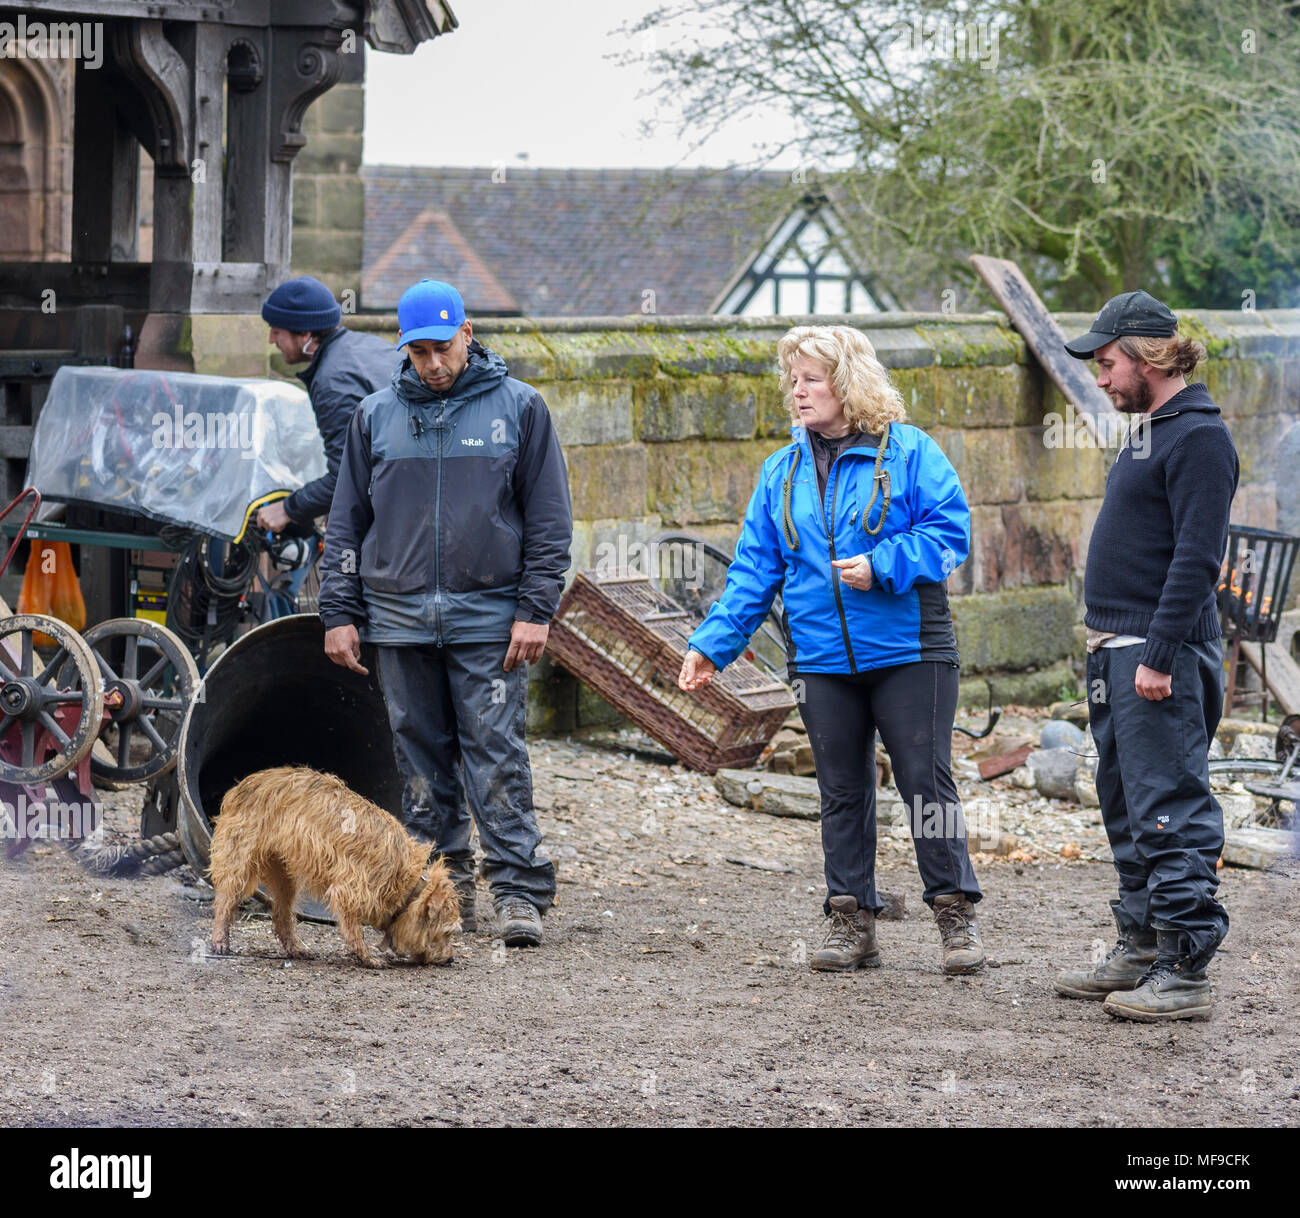 Great Budworth, UK. 11 avril, 2018. Directeur Craig Viveiros et entraîneur de chien s'apprêtait à tourner une scène sur l'ensemble dans le nouveau drama de la BBC "Guerre des W Banque D'Images